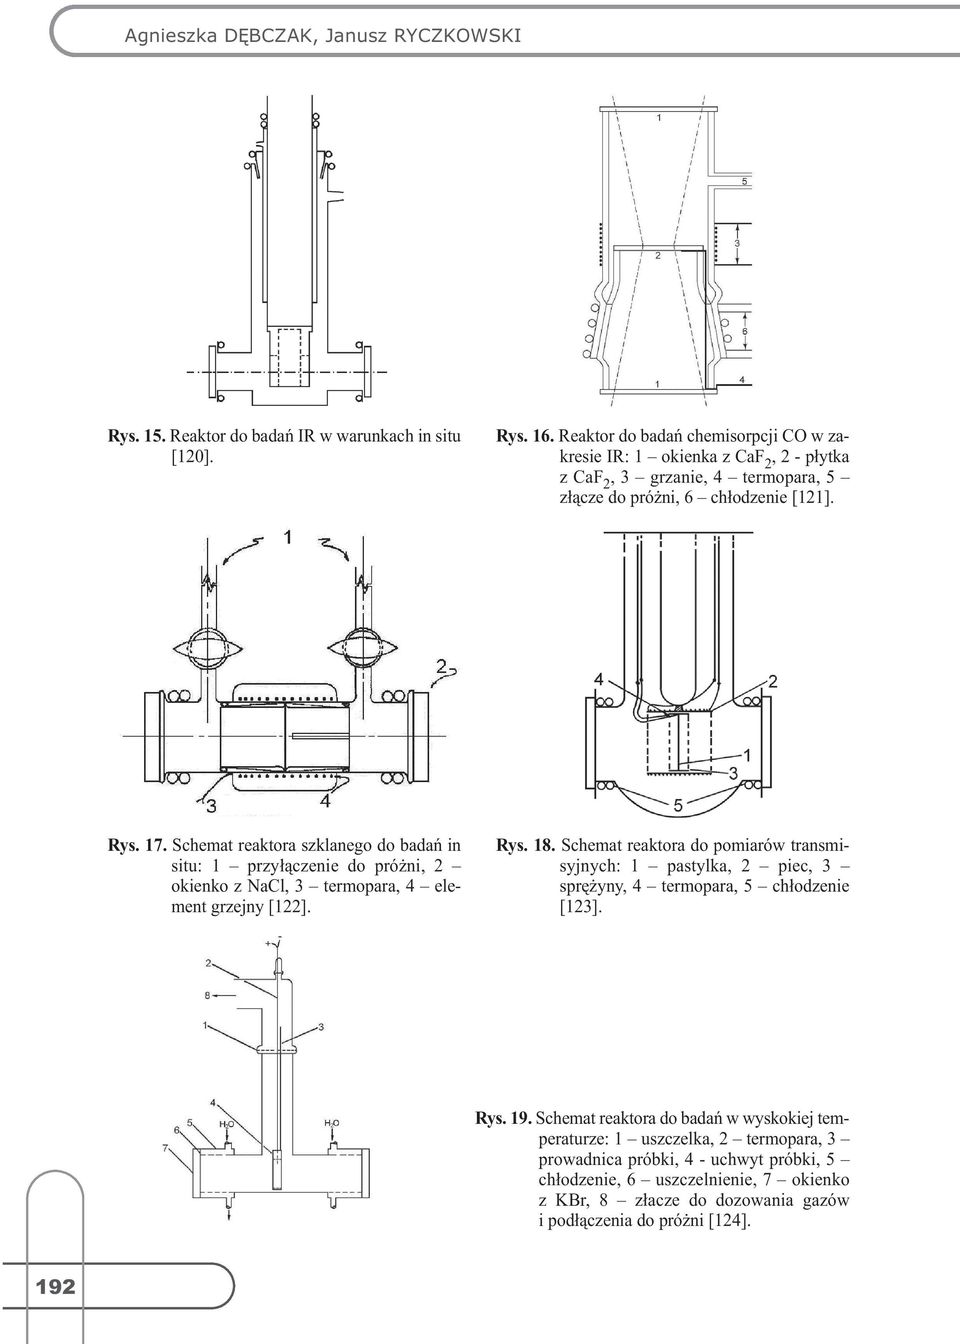 Schemat reaktora szklanego do badań in situ:1 przyłączeniedopróżni,2 okienkoznacl,3 termopara,4 element grzejny[122]. Rys. 18.